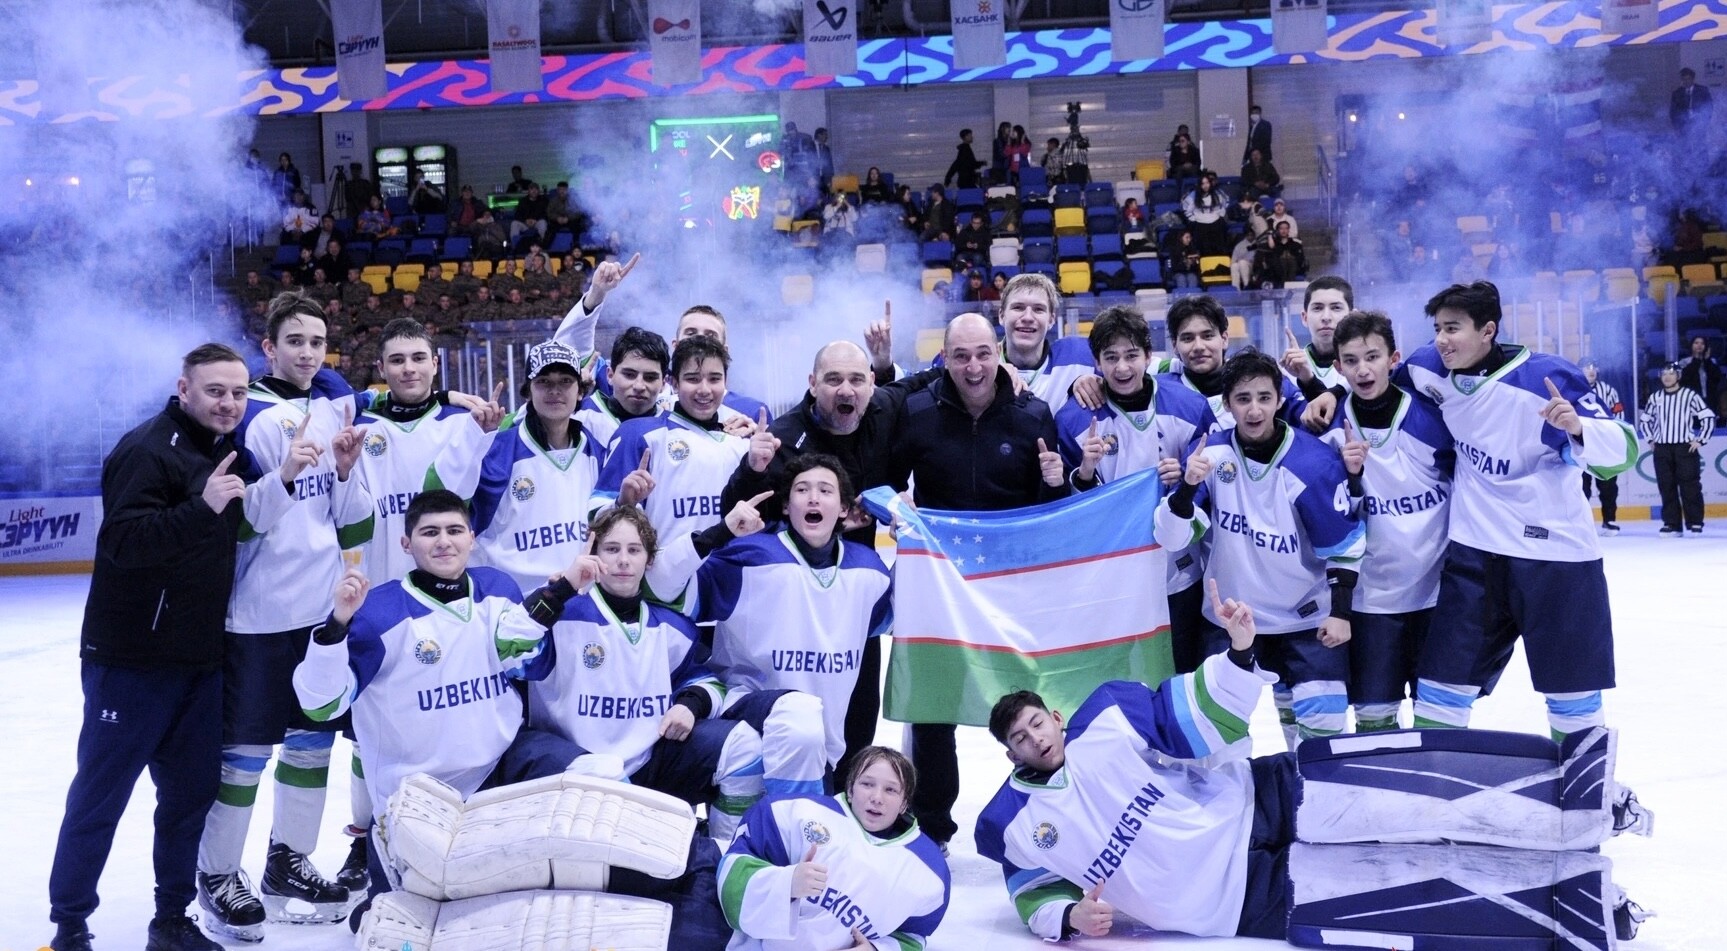 Юношеская сборная Узбекистана по хоккею стала чемпионом Азии и Океании